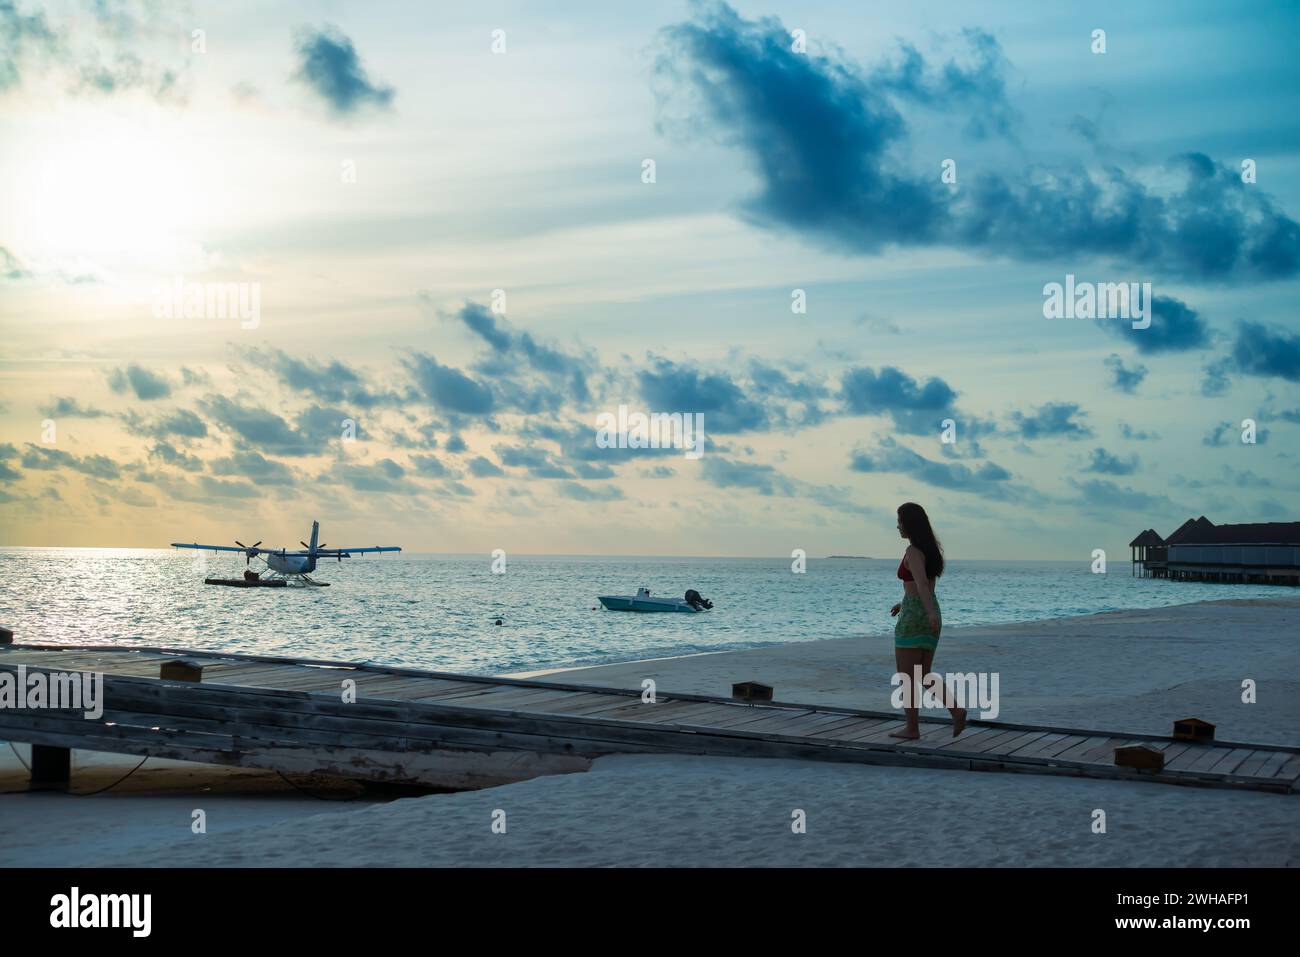 Ein malerischer Blick auf ein Meeresflugzeug am maledivischen Meer, mit einer Frau, die auf dem Dock spaziert, schafft einen idyllischen und ruhigen Küstenort im Paradies Stockfoto